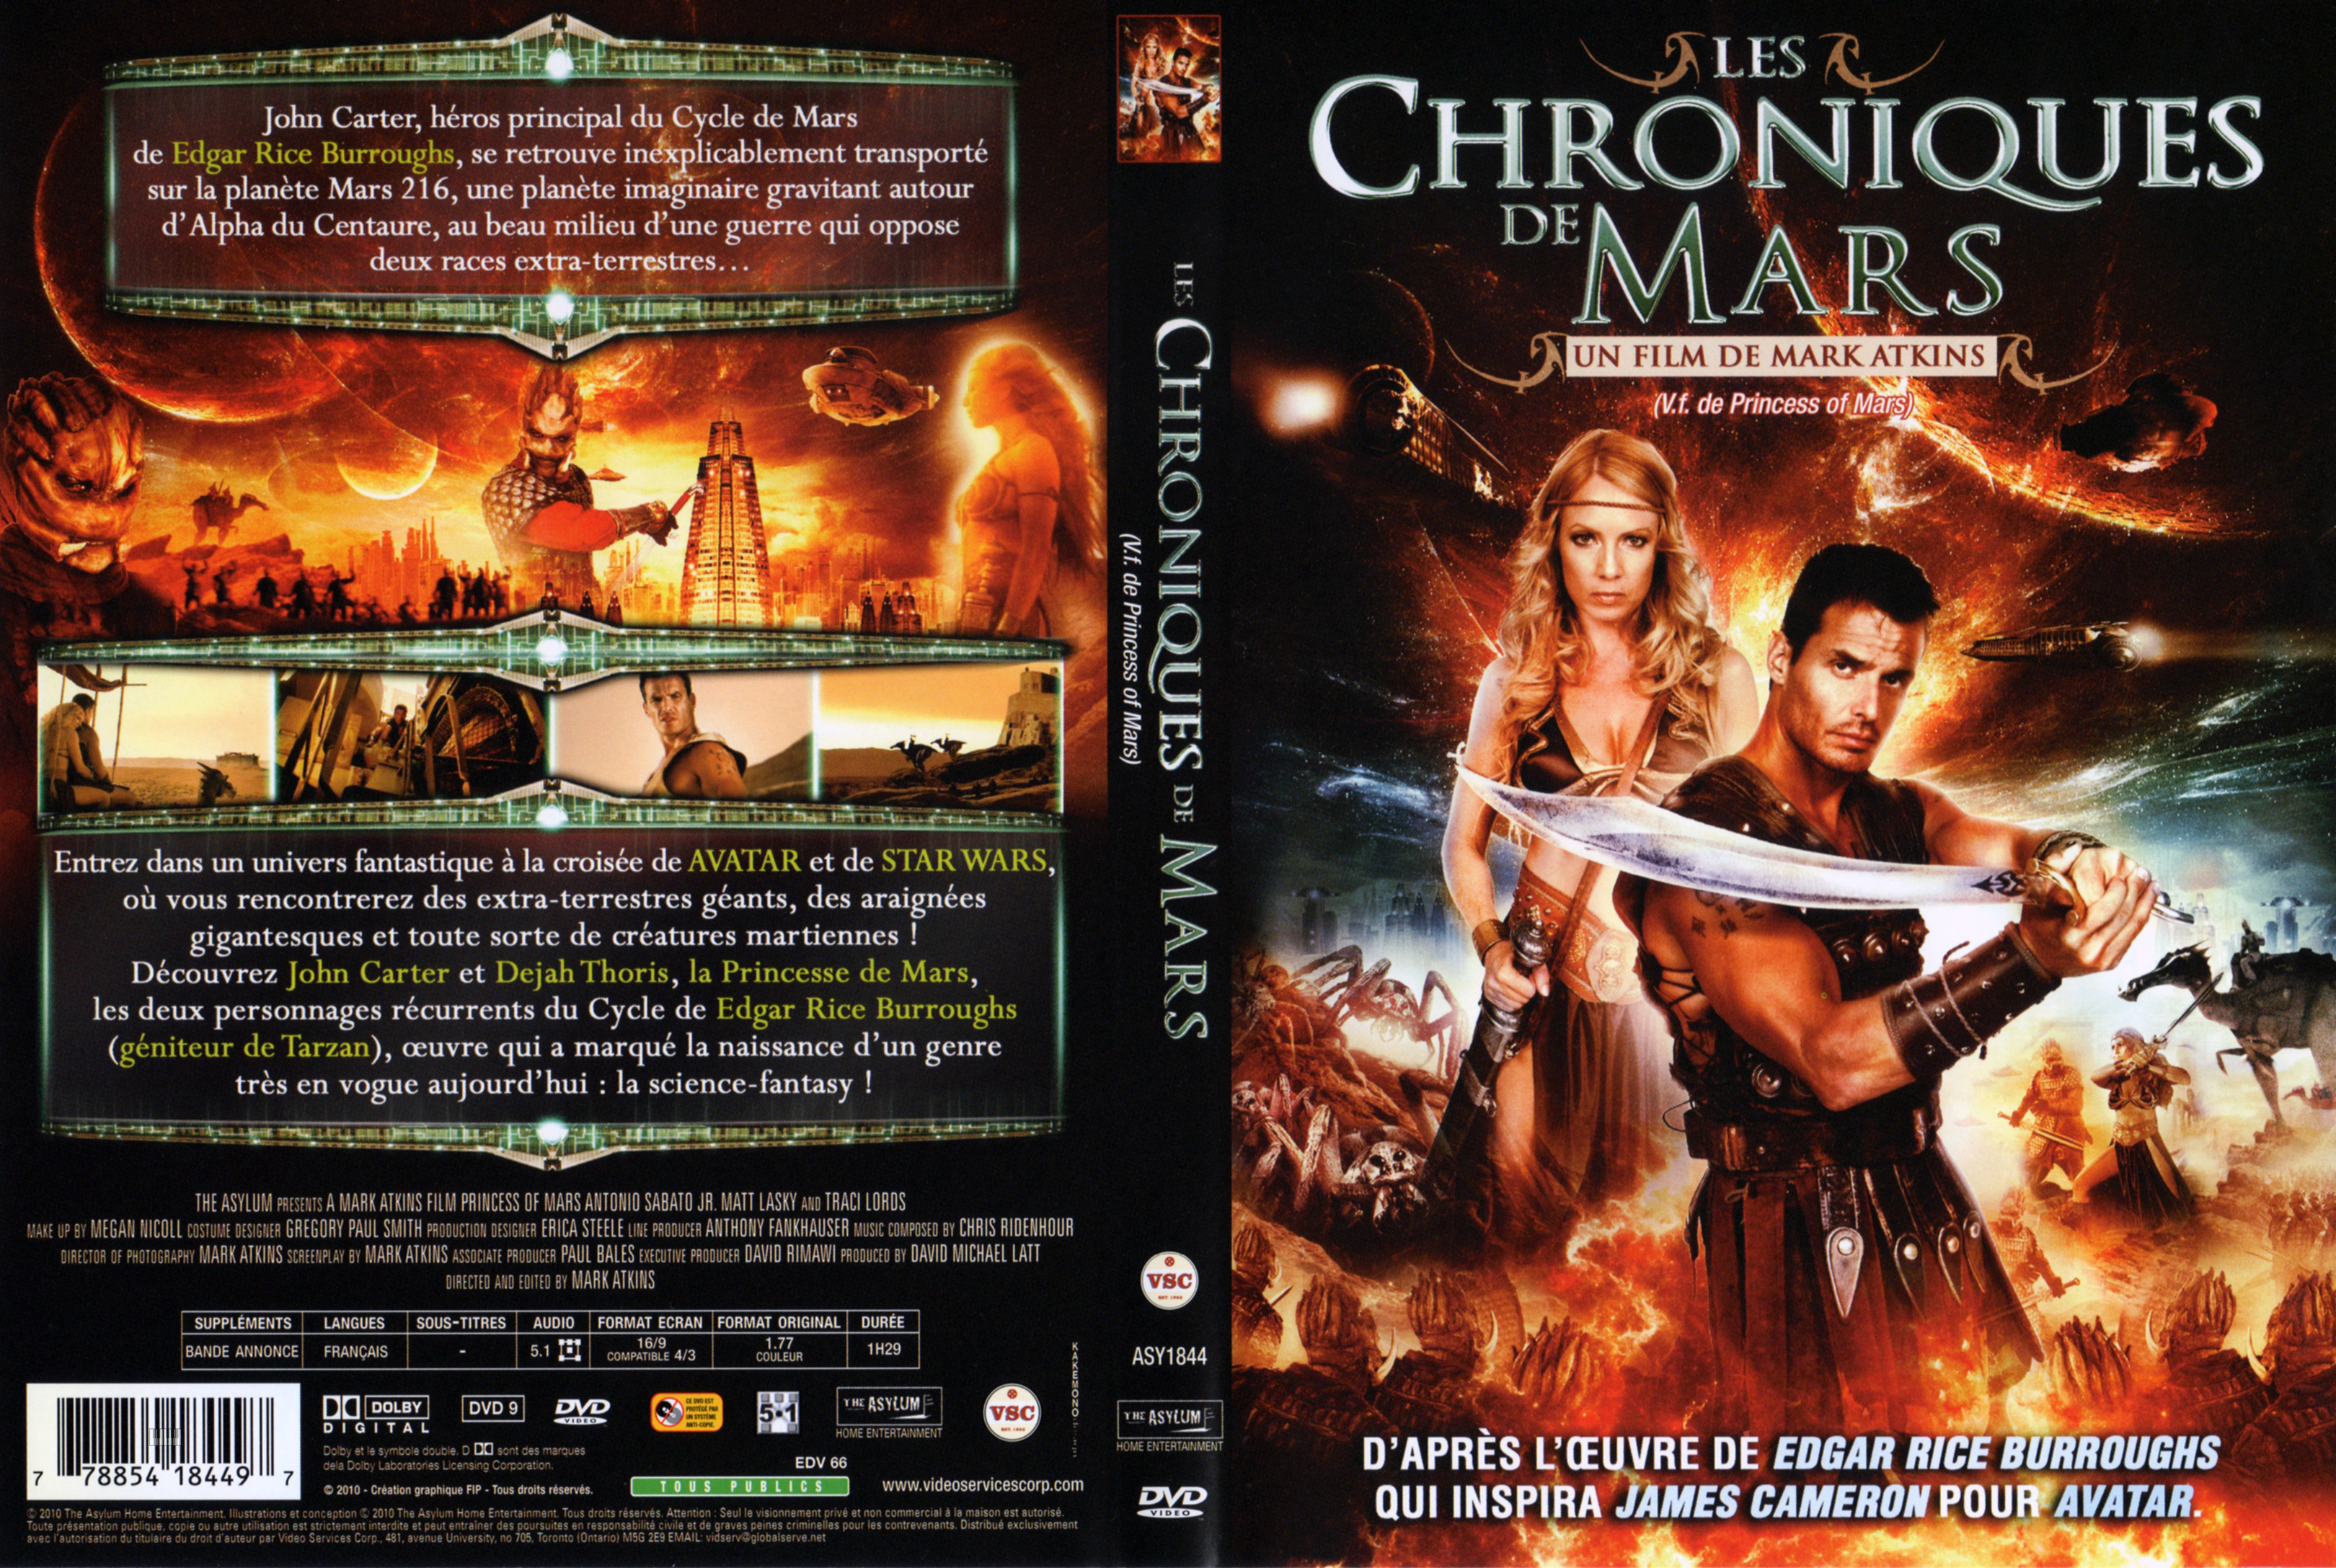 Jaquette DVD Les chroniques de Mars v2